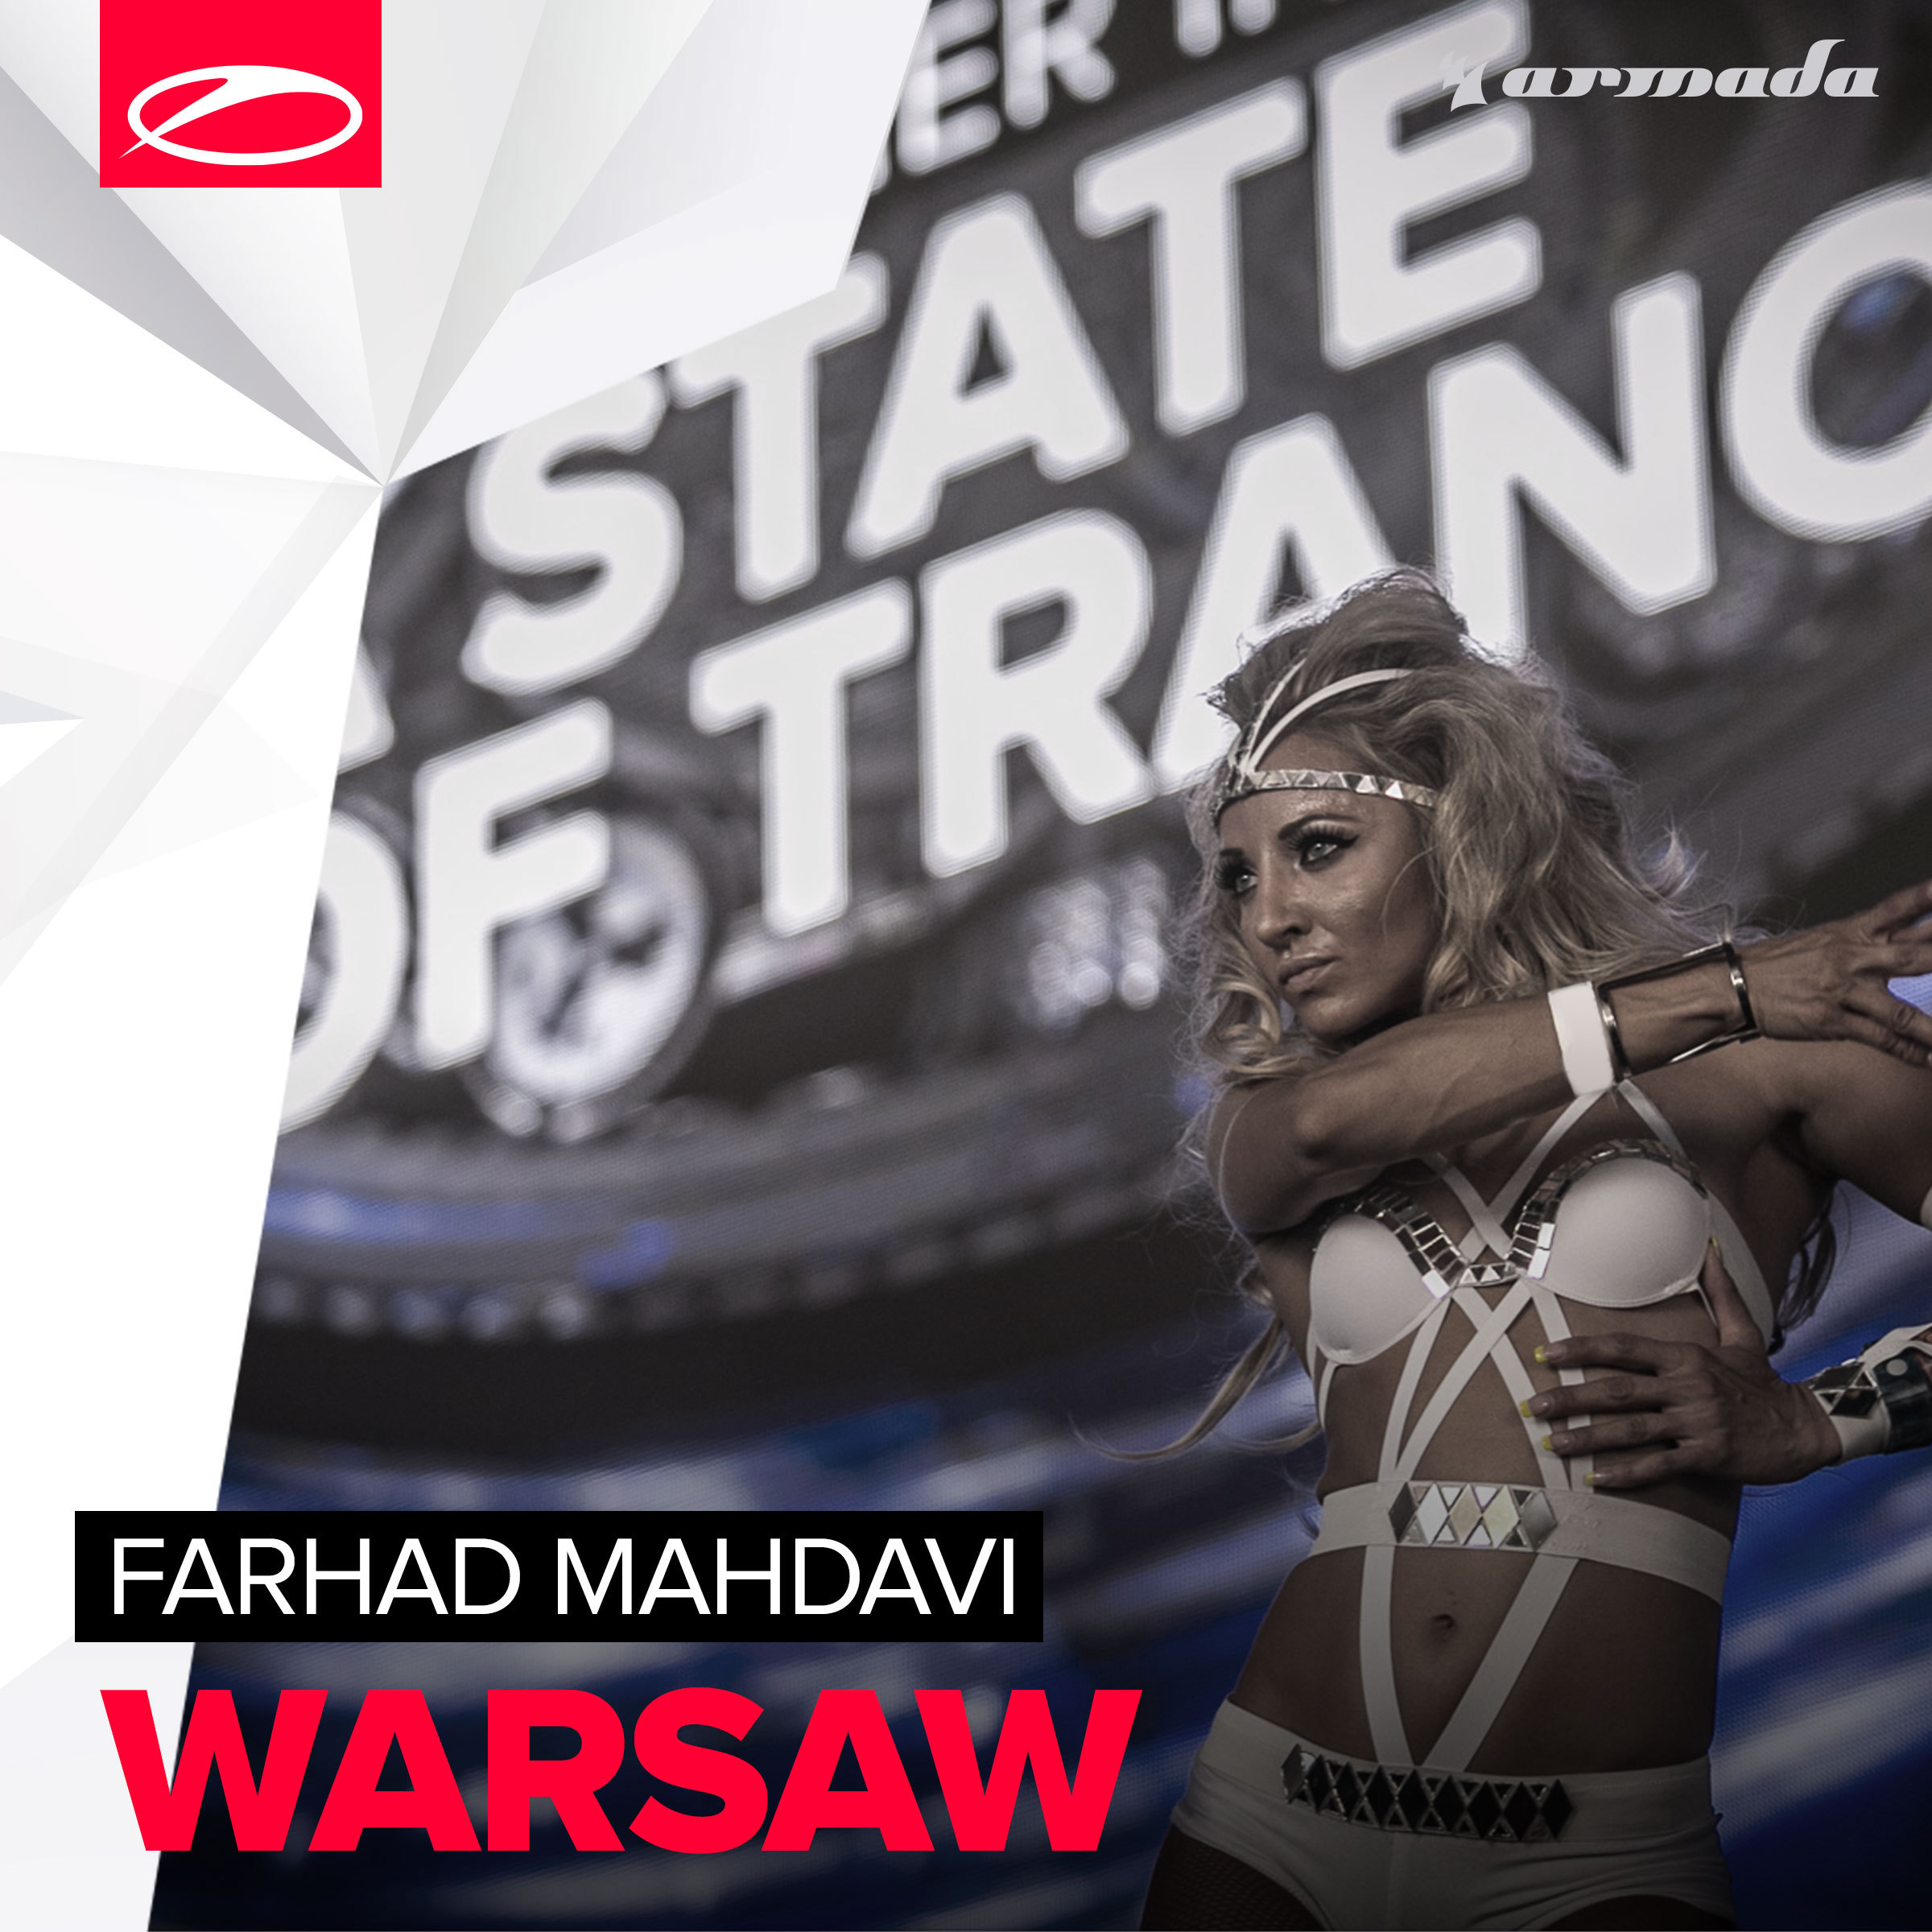 Warsaw (Original Mix)